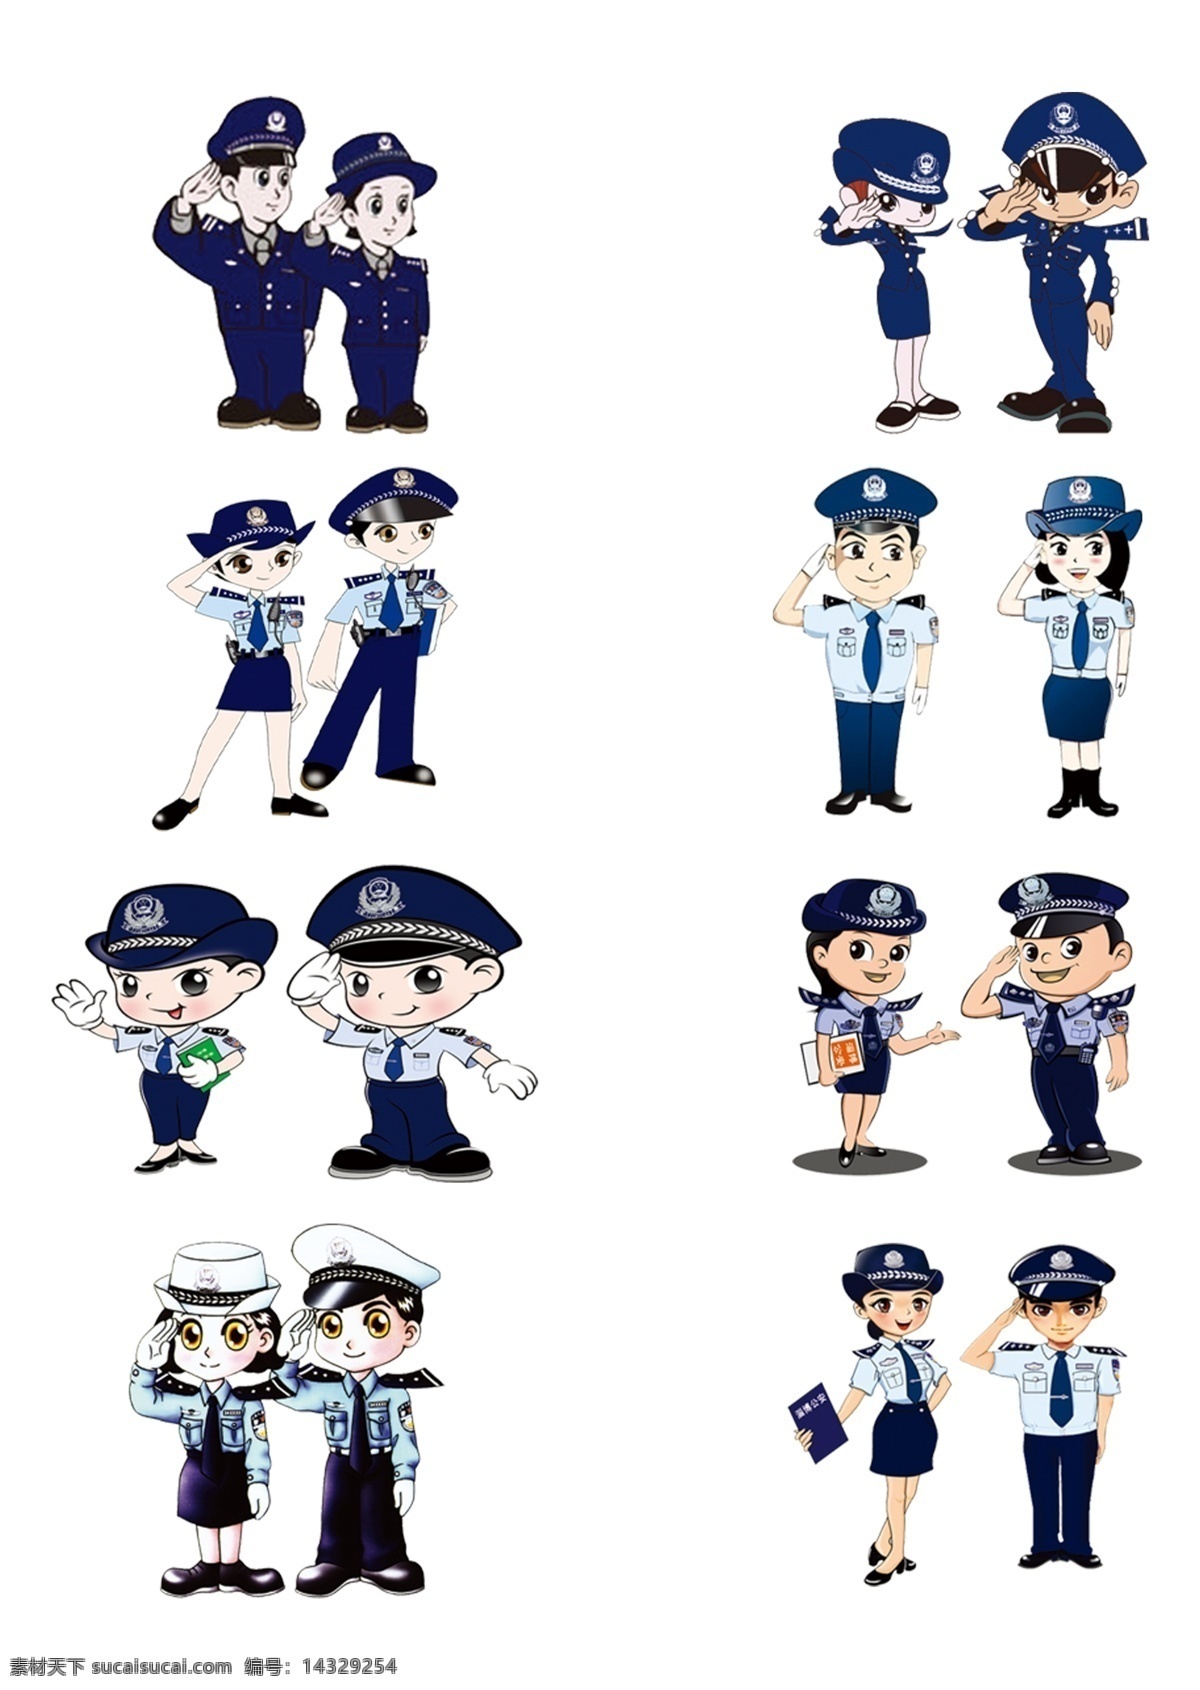 卡通 警察 装饰 图案 元素 集合 卡通警察 卡通元素 警察图案 警察元素 蓝色制服 职业 敬礼 男女警察